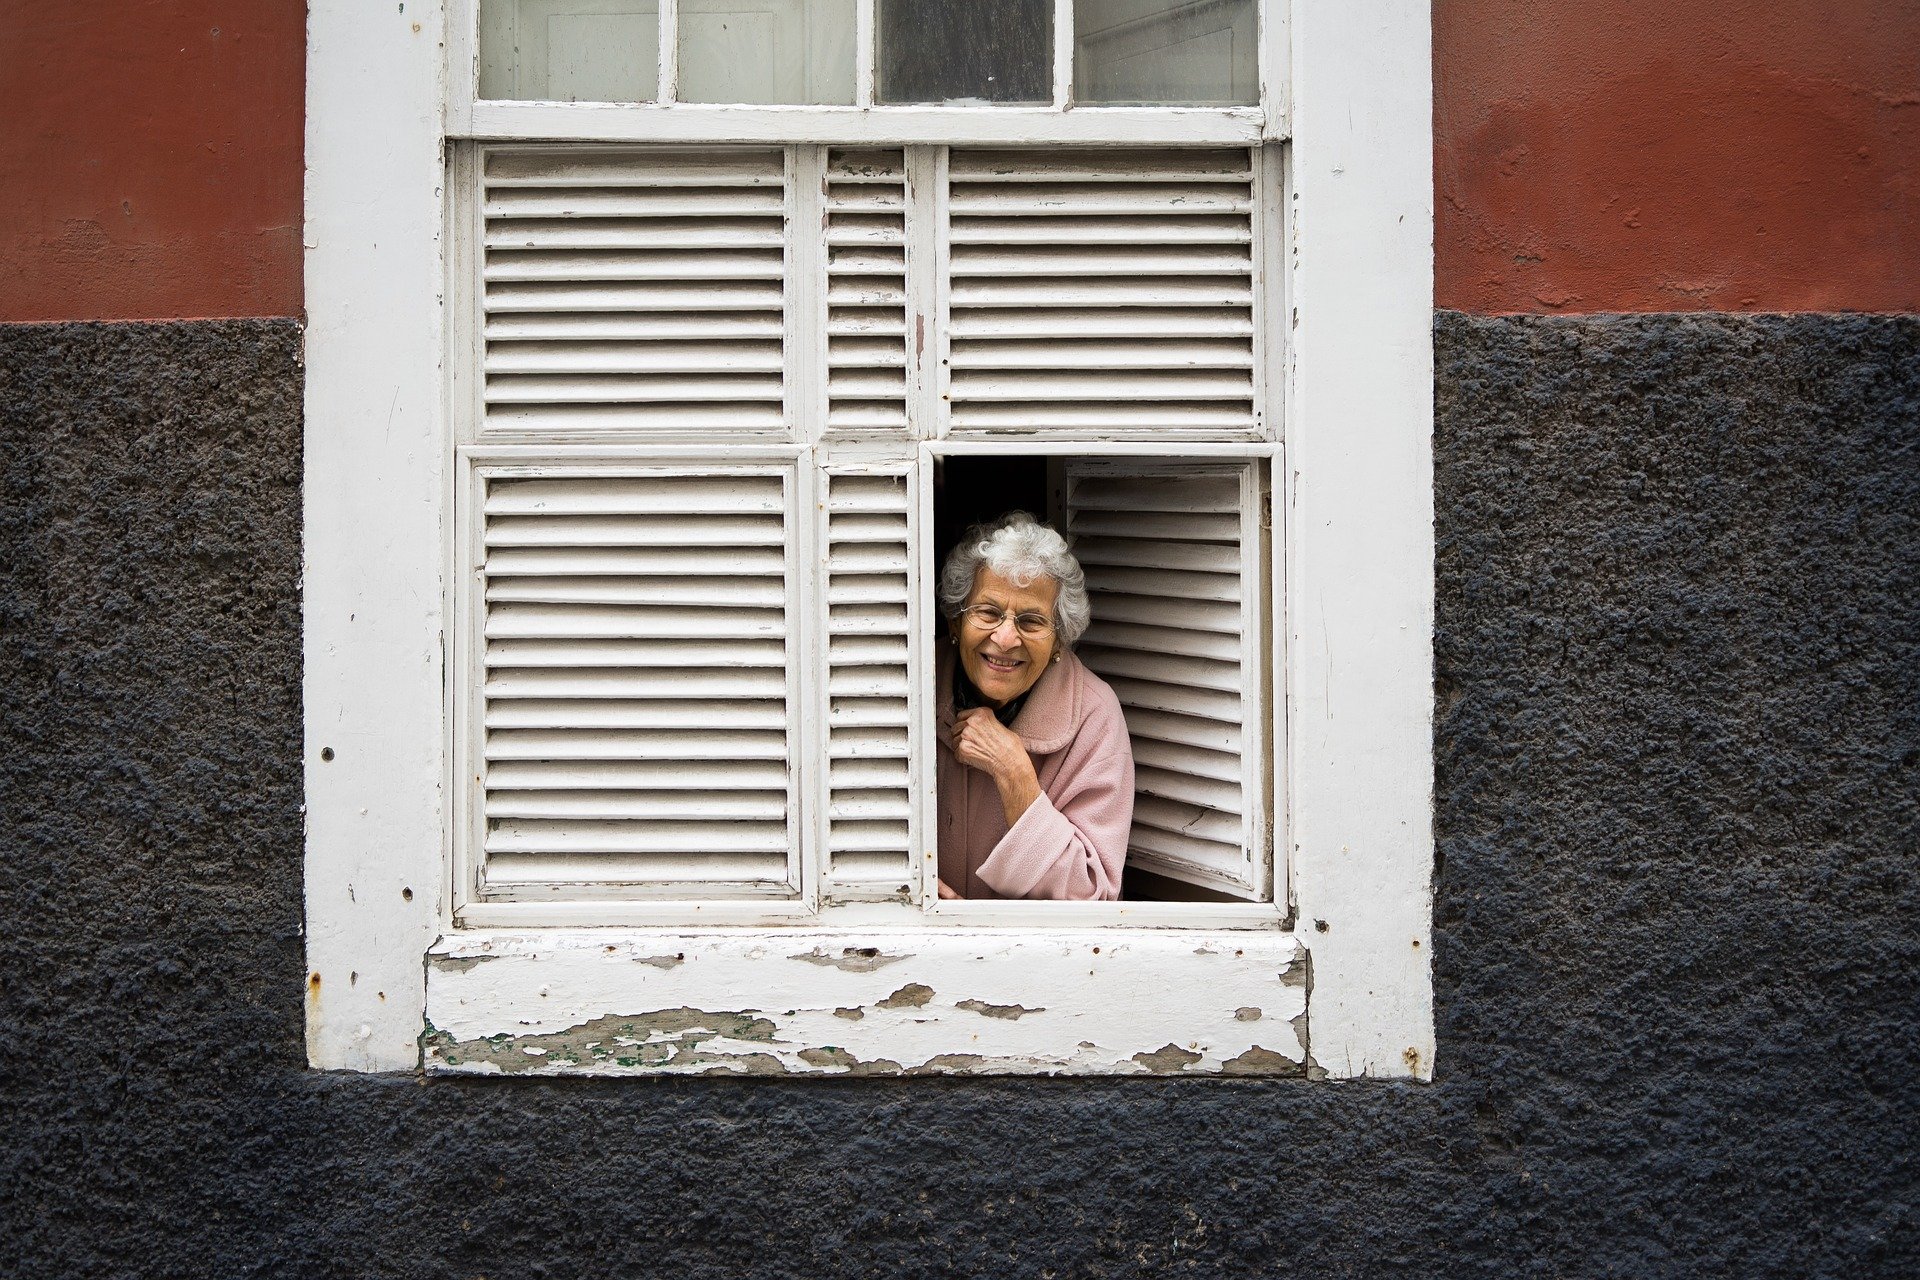 Grand-mère regardant par la fenêtre | Source : Pixabay